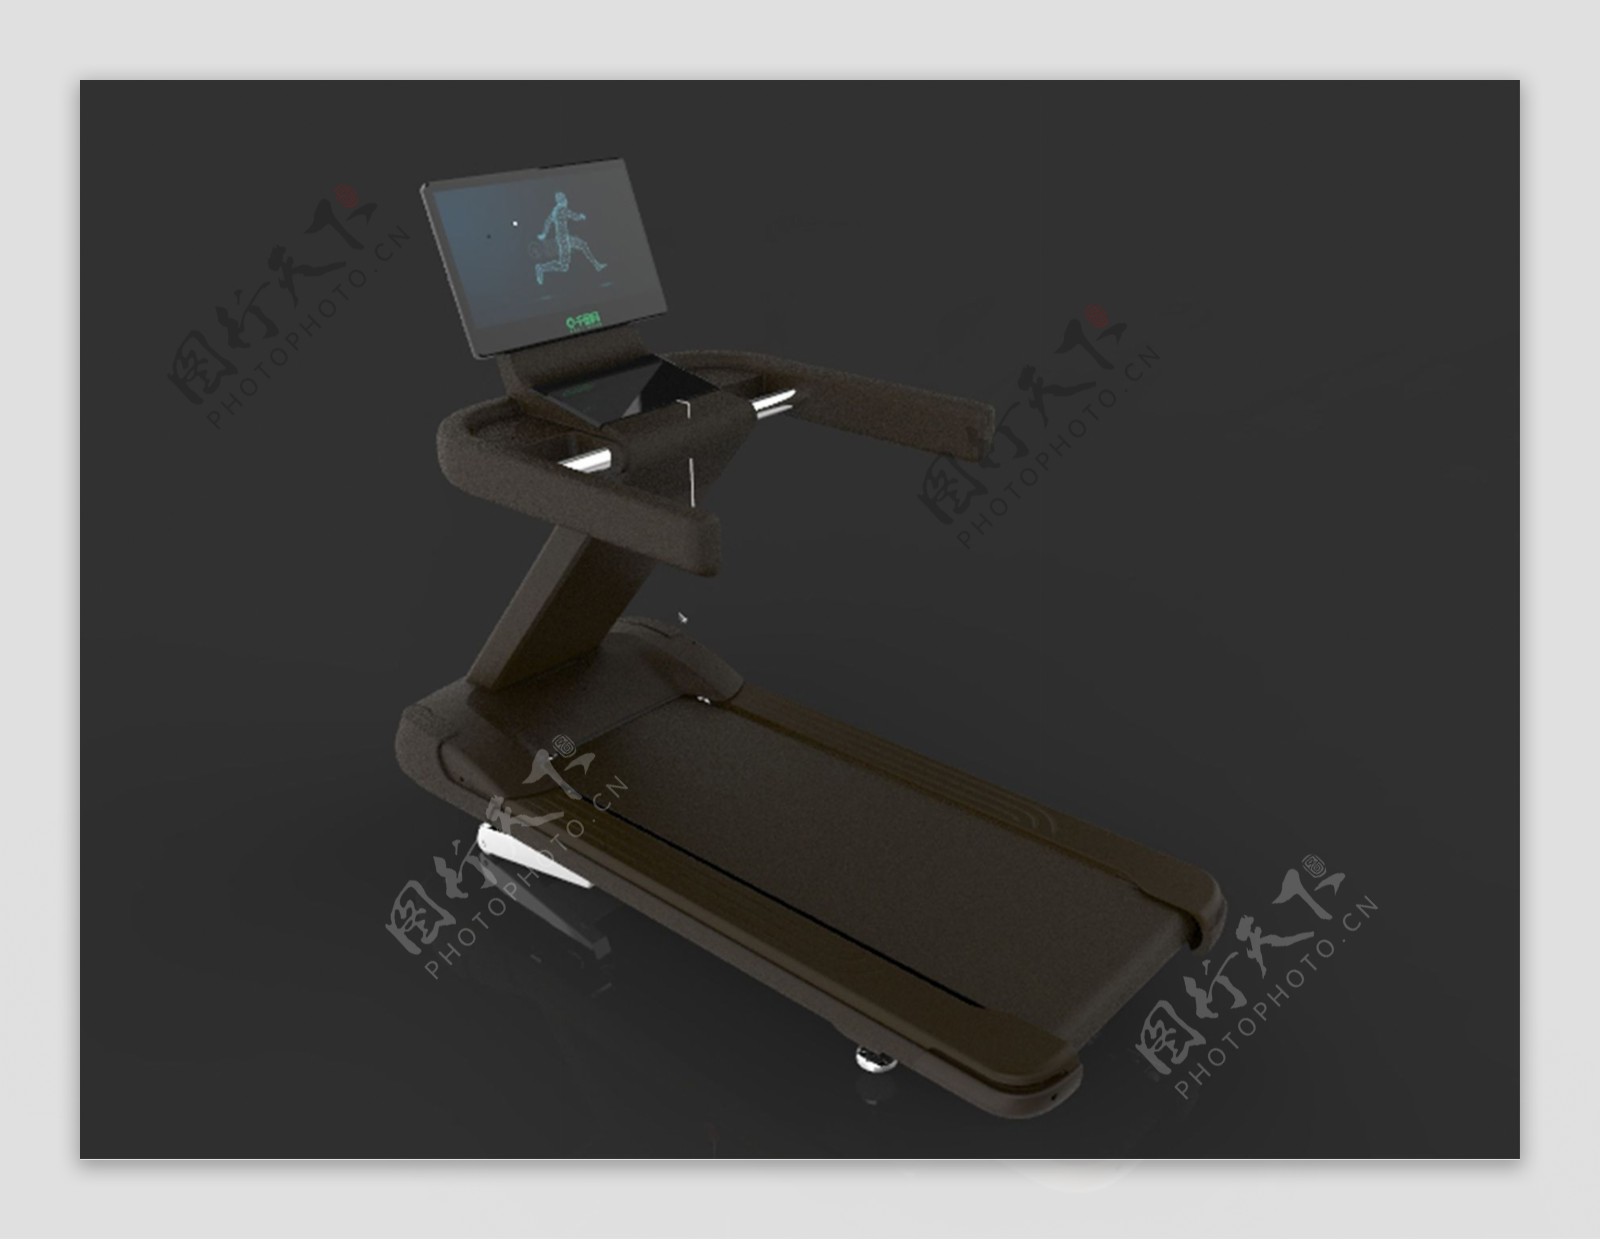 原创健身器材跑步机外观设计3D模型stp